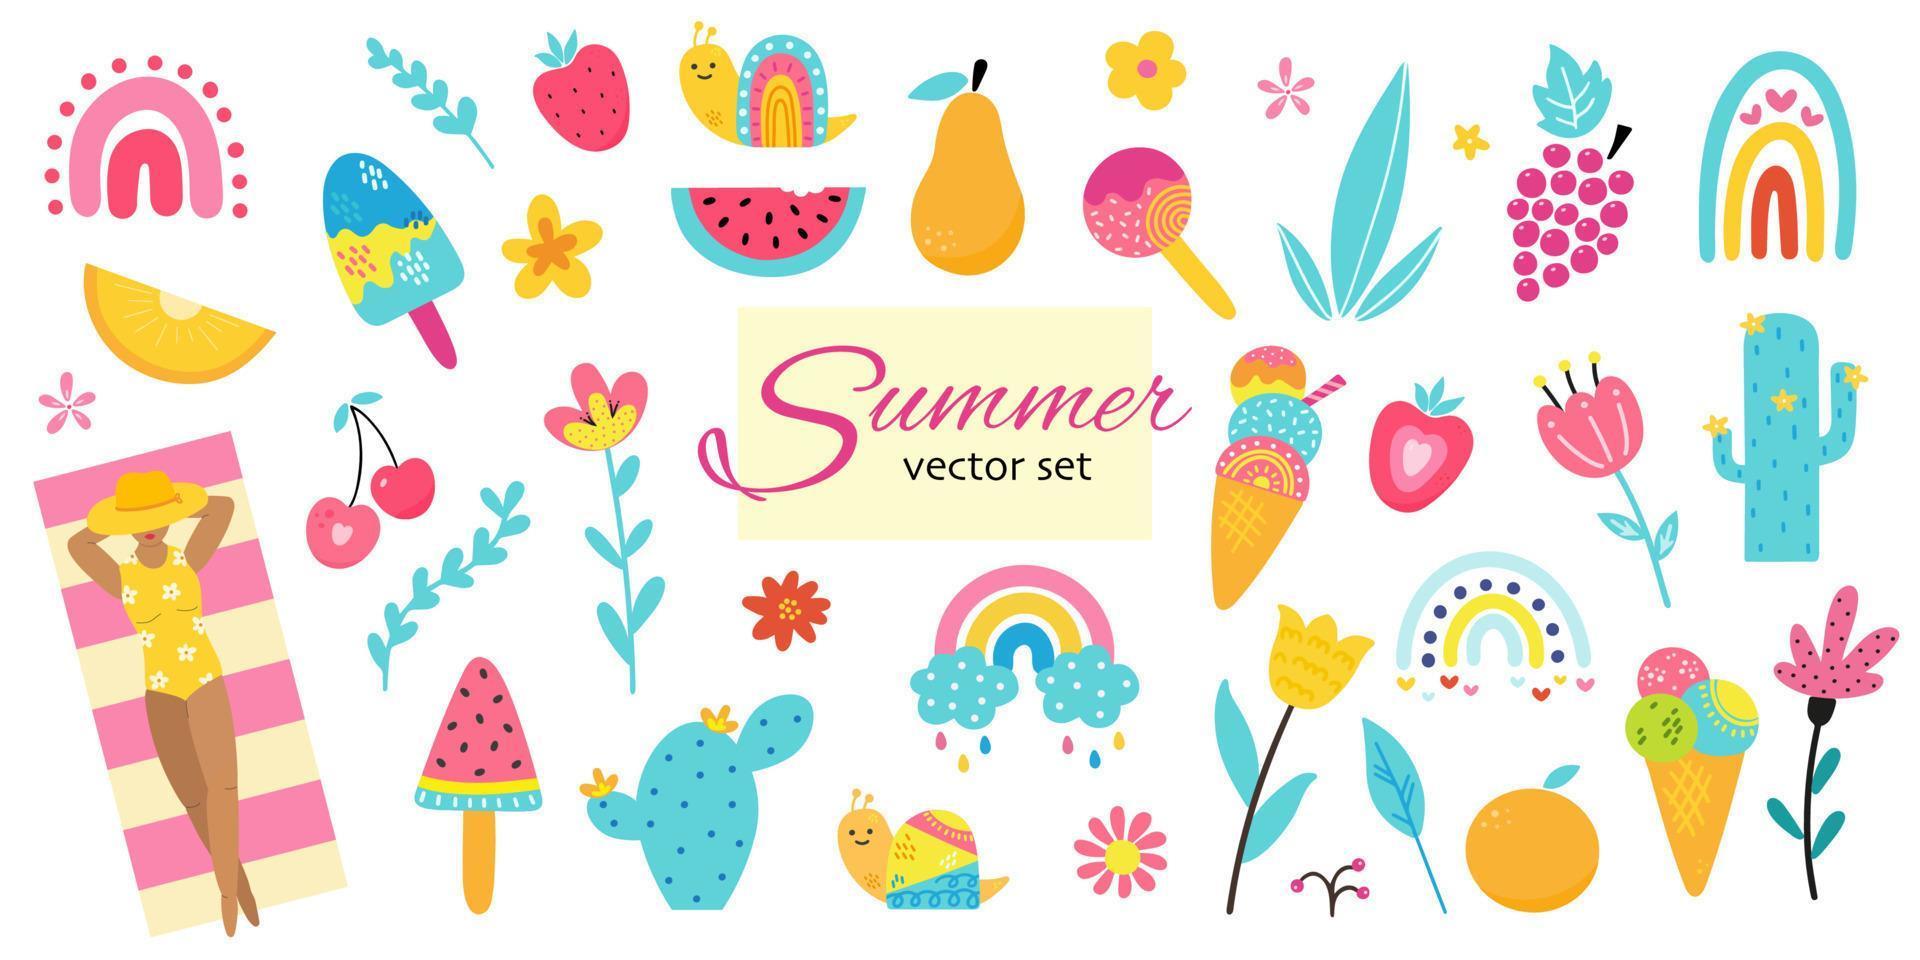 conjunto de elementos desenhados à mão de verão, mulher está tomando sol, praia, frutas, sorvete, flores, cactos, arco-íris, plantas. adesivos bonitos e coloridos para cartazes, scrapbooking, convites para festas de verão vetor